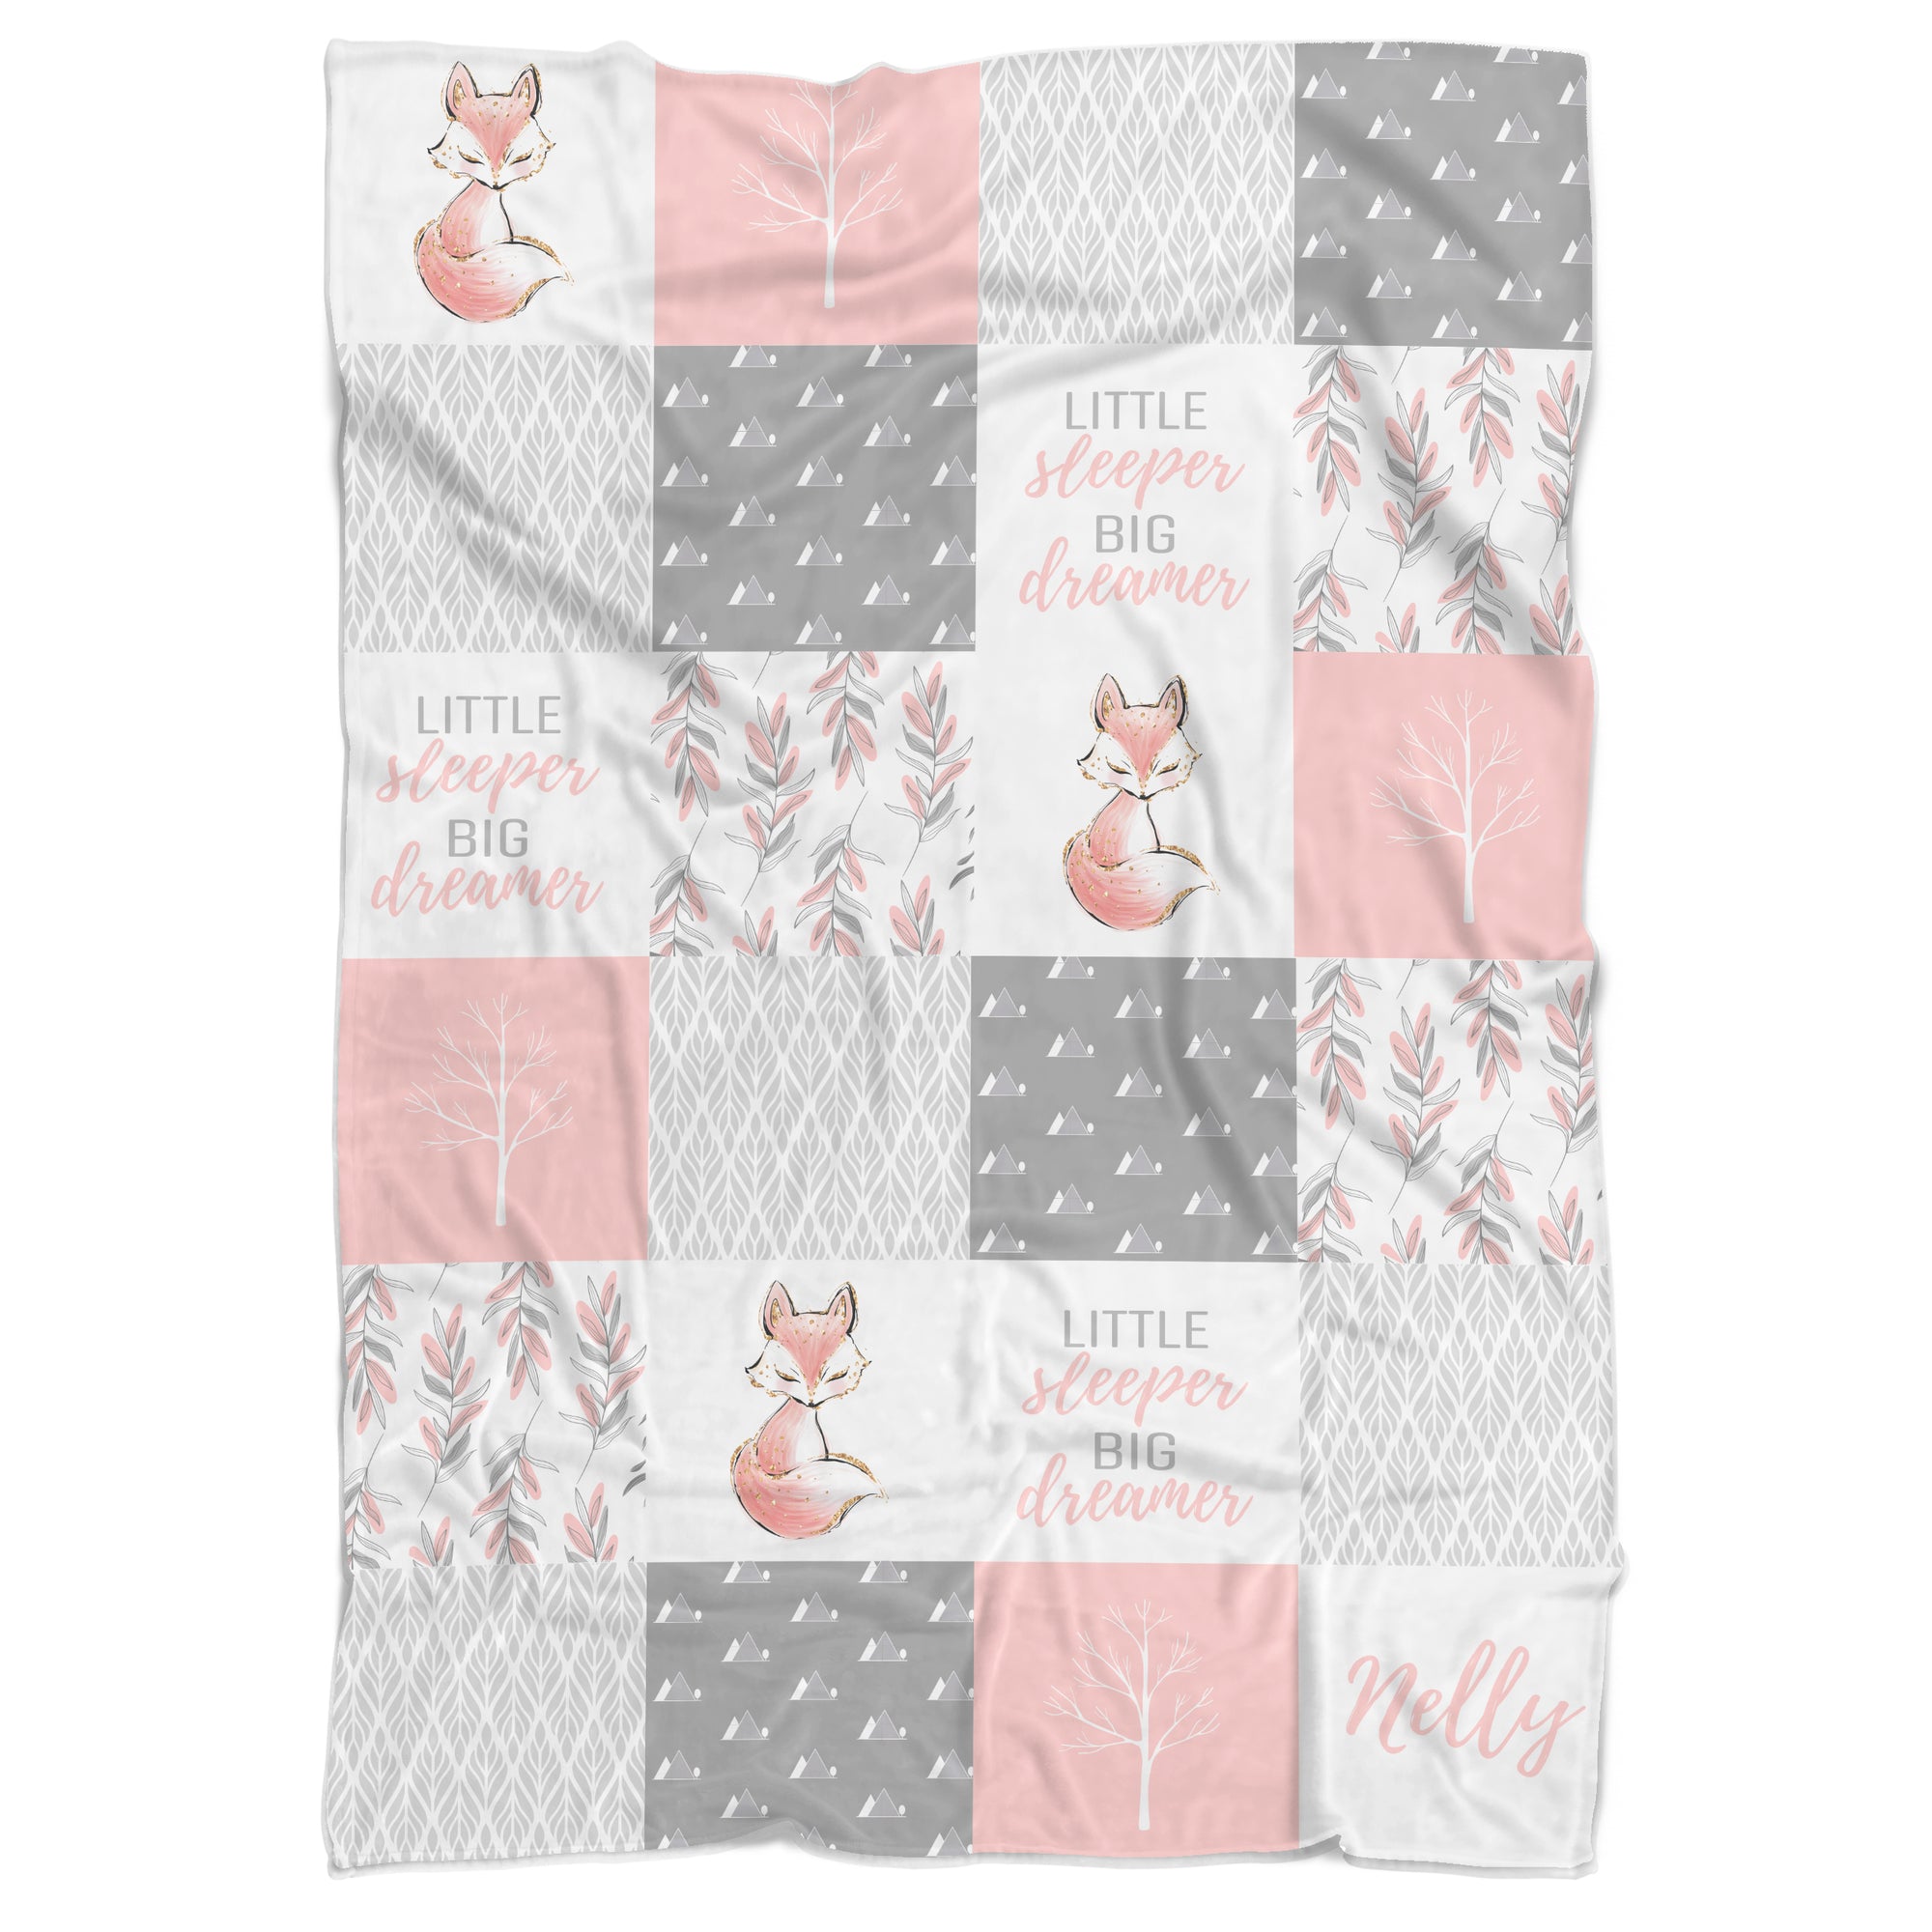 Personalized Little Sleeper Big Dreamer Pink Fox Minky Blanket